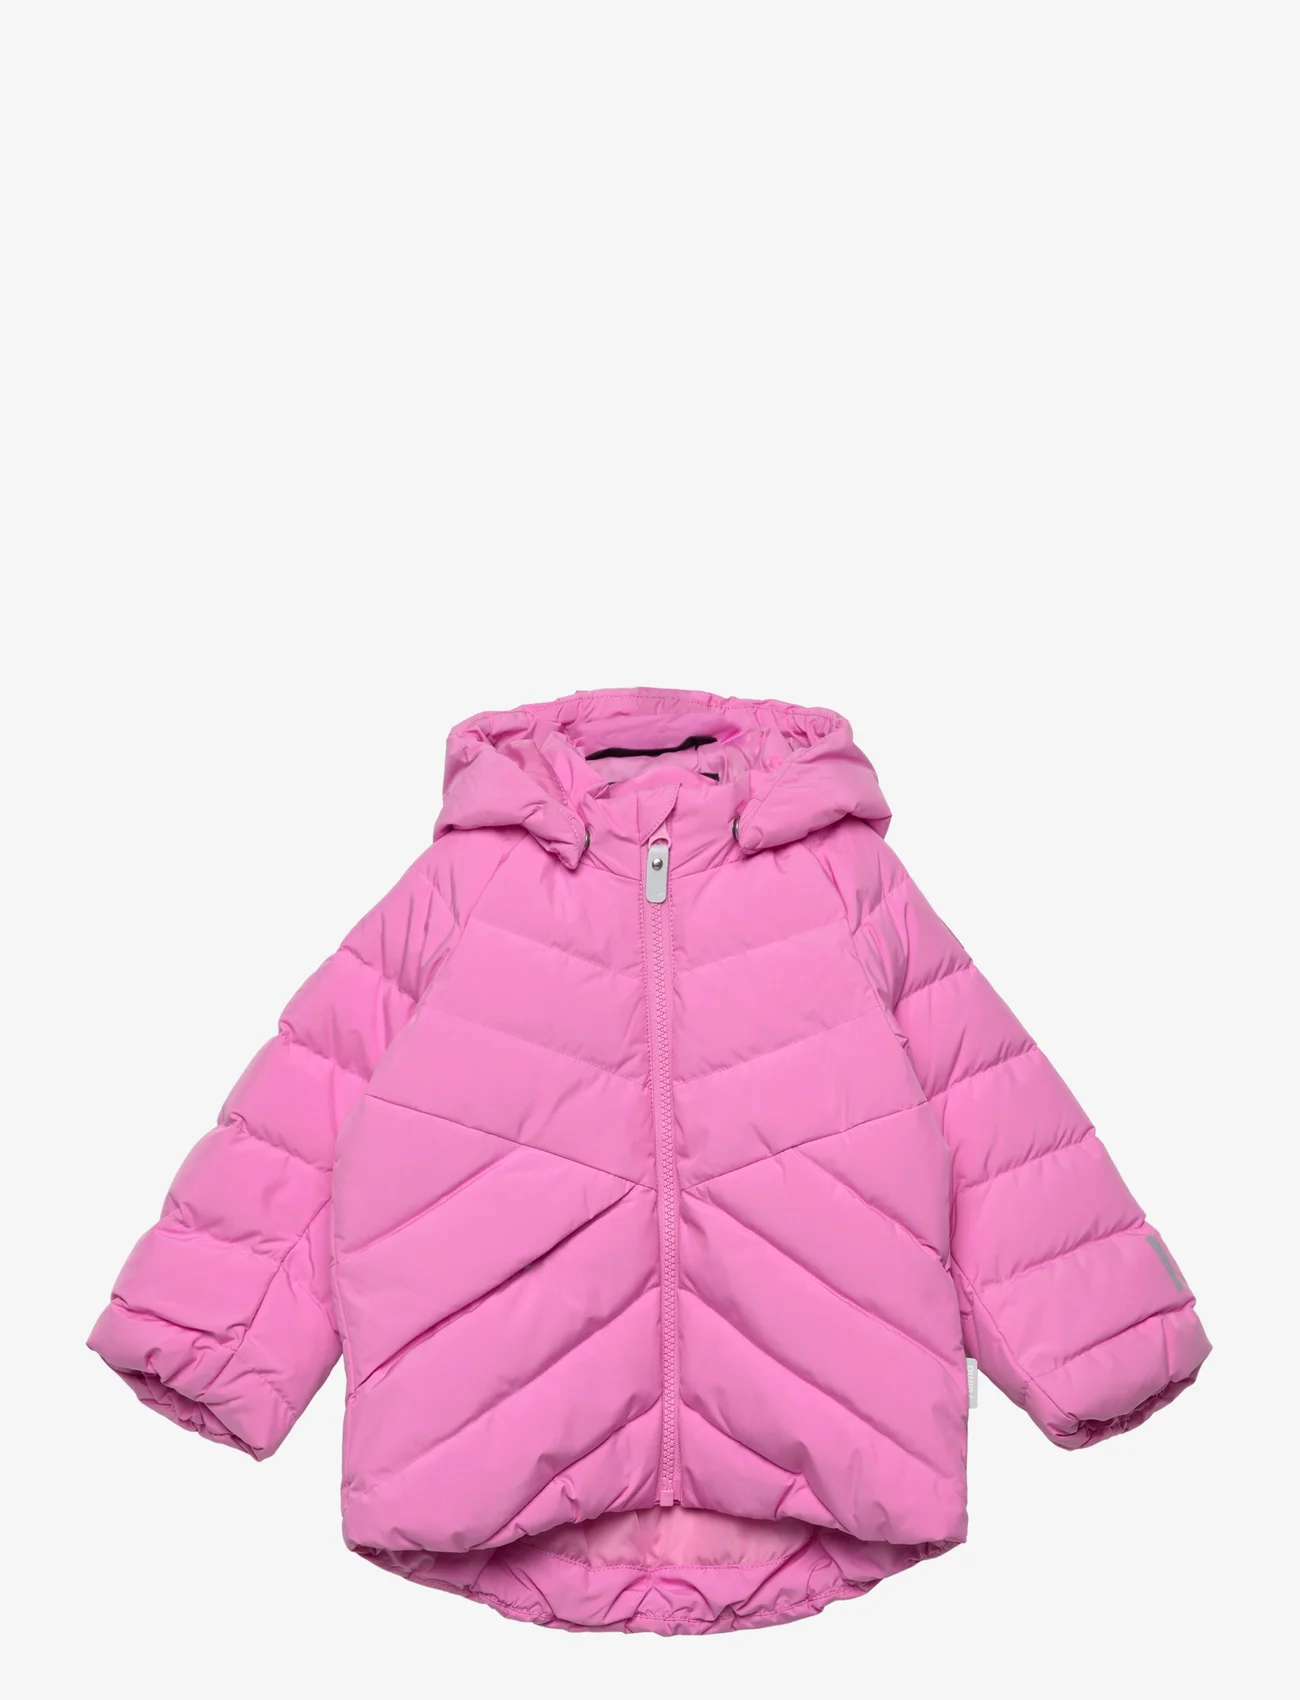 Reima - Down jacket, Kupponen - dunjakker og fôrede jakker - cold pink - 0